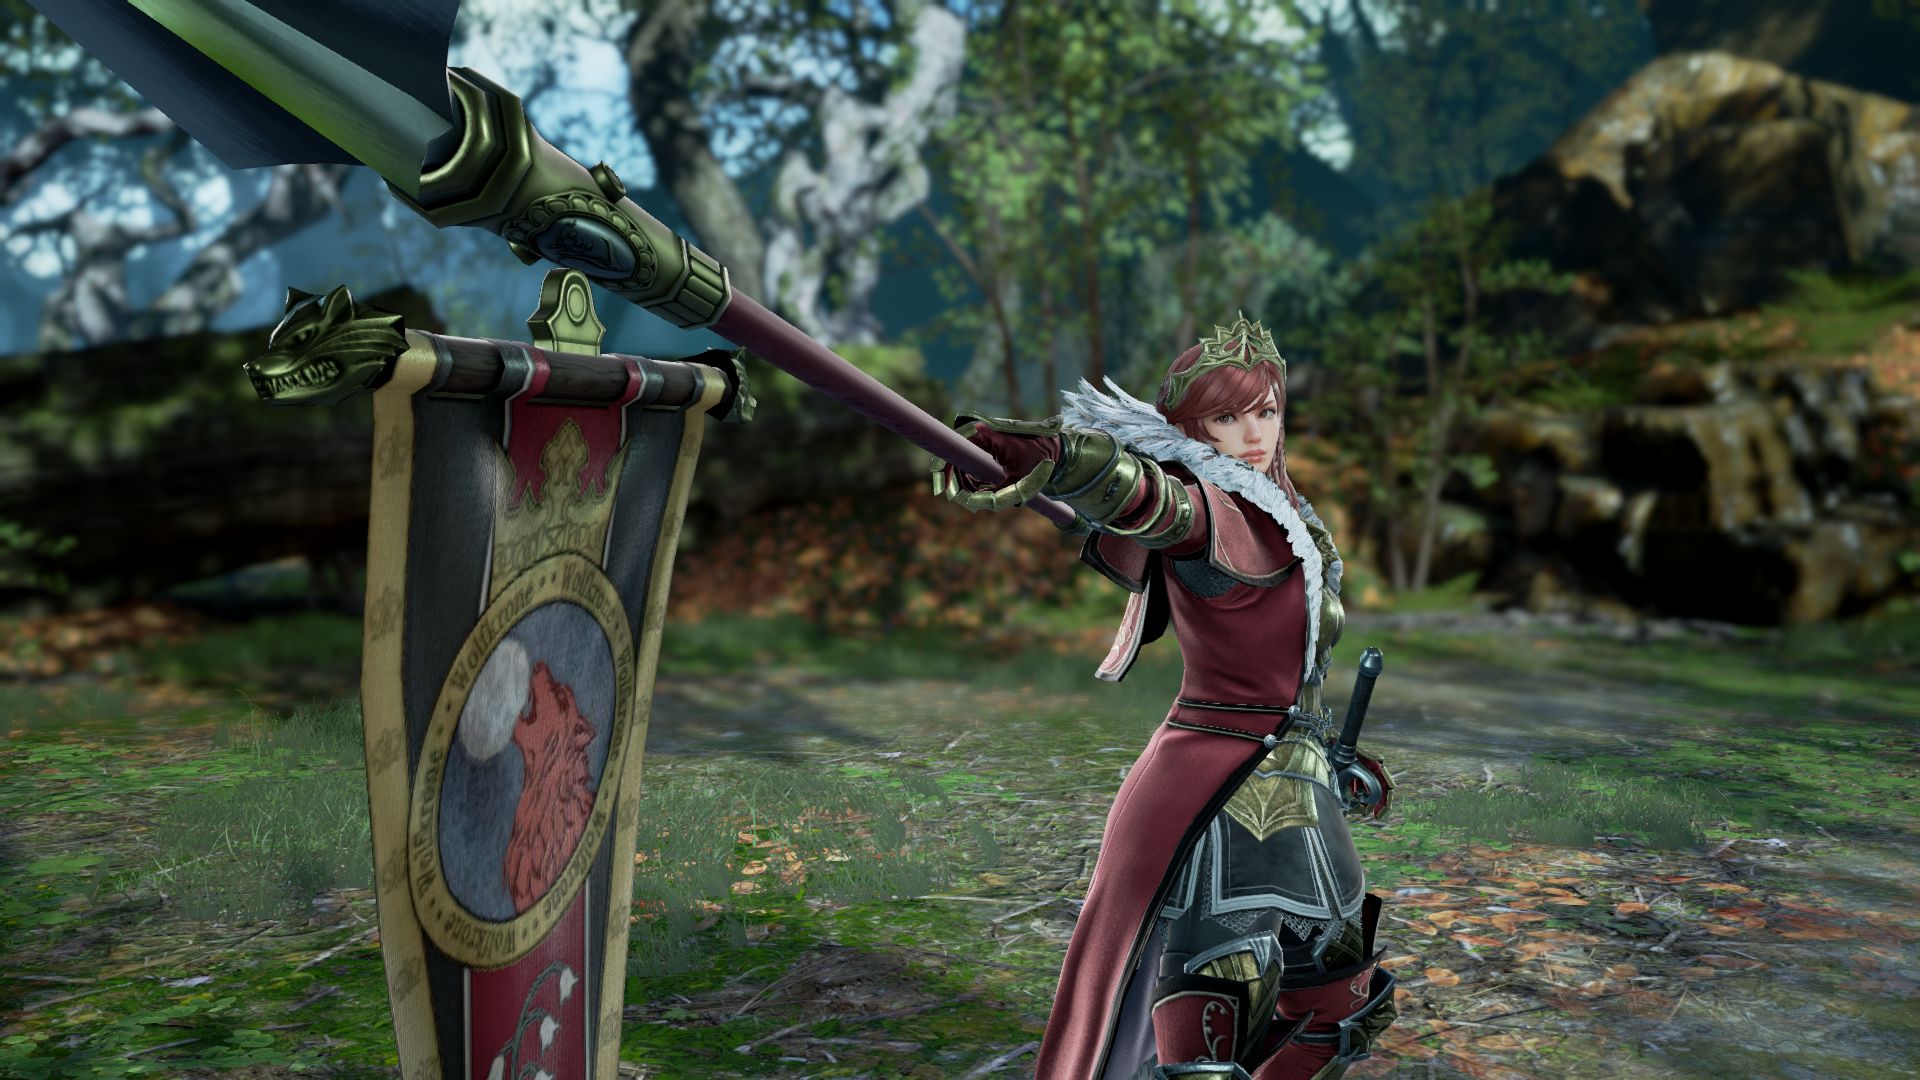 《劍魂6》DLC角色希爾德截圖 重甲女戰士強悍